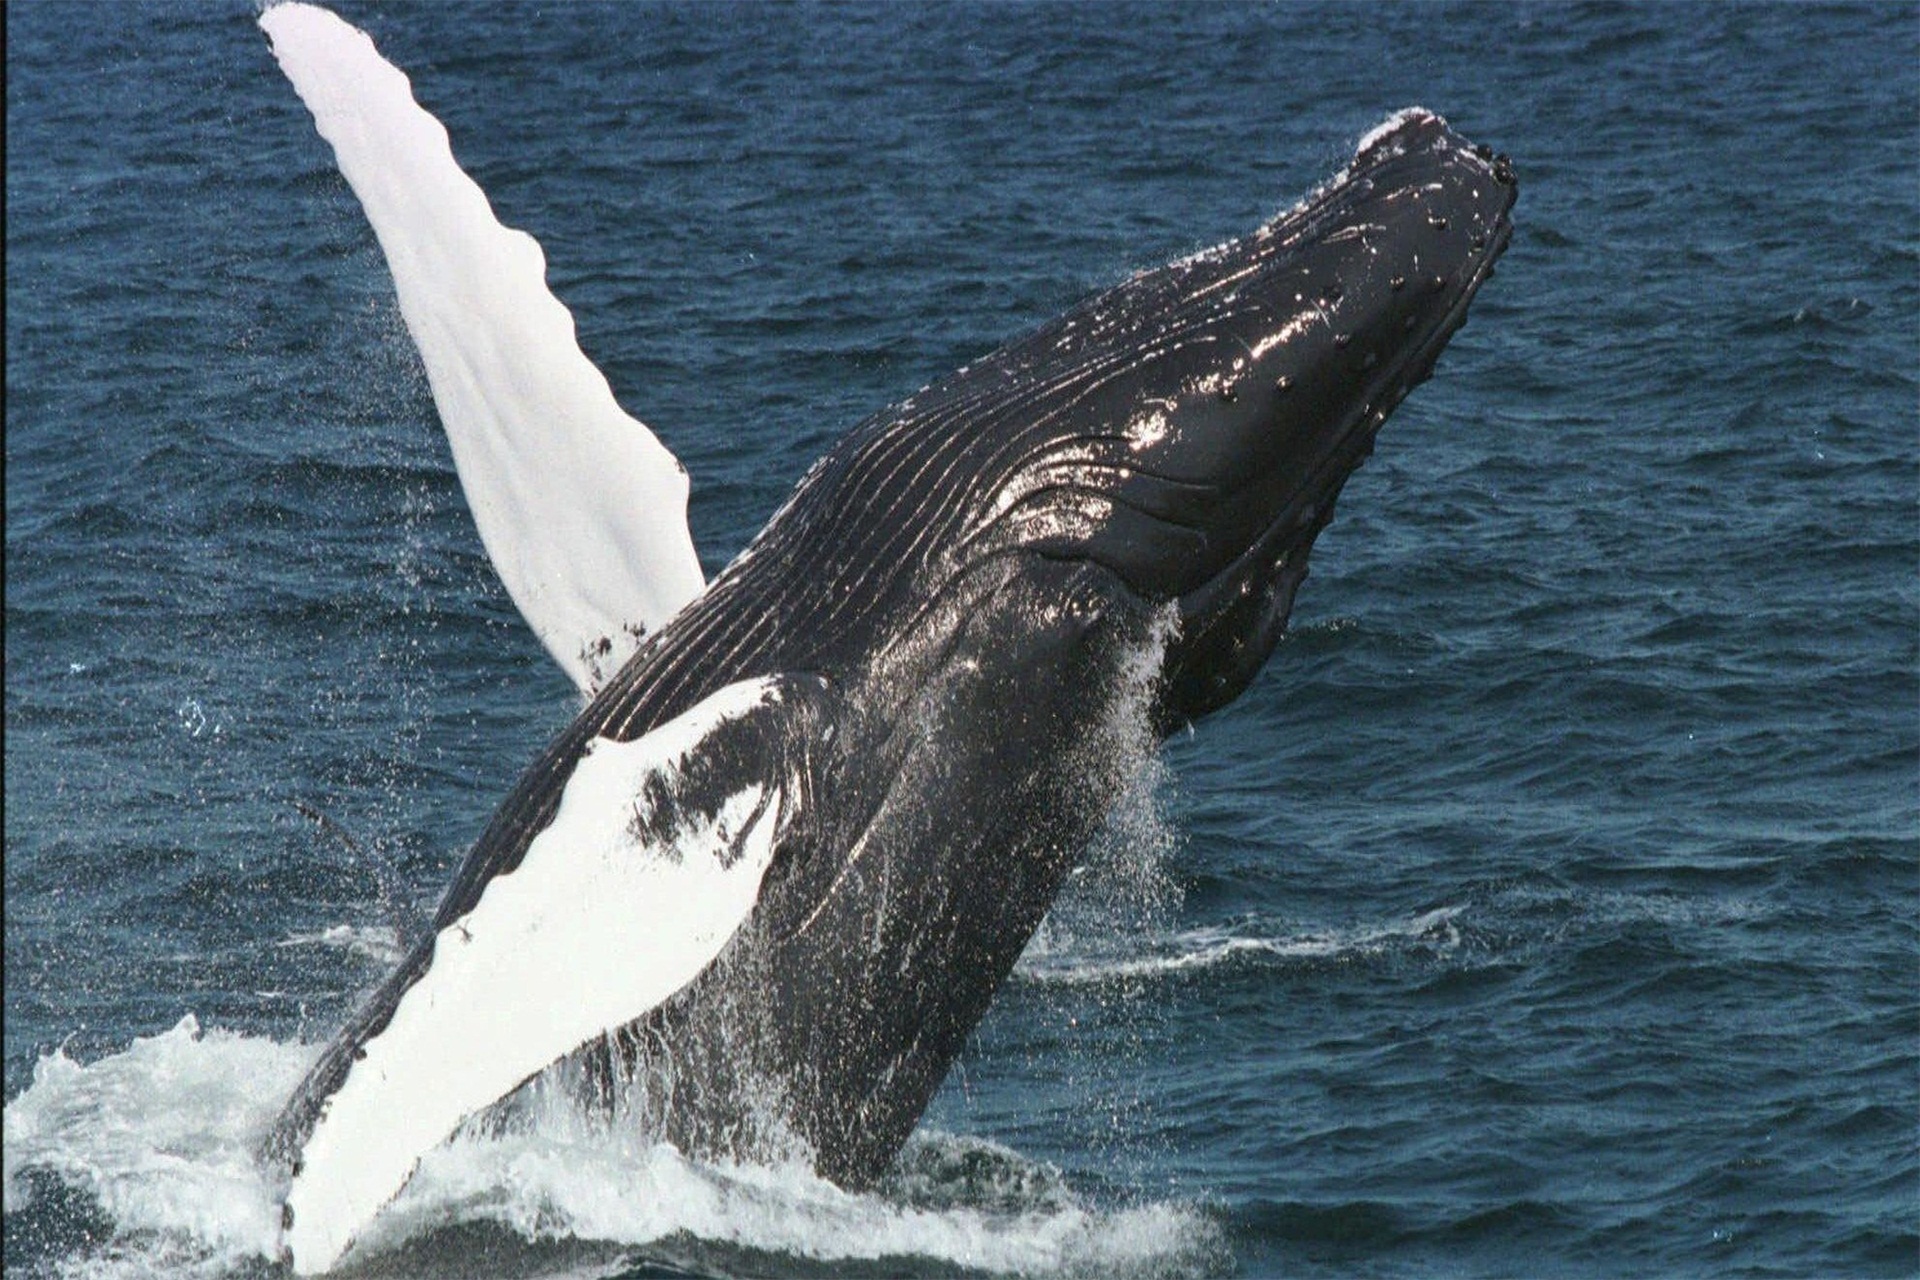 生下来就有6米长的长须鲸,虽然体型庞大,却已经濒临灭绝